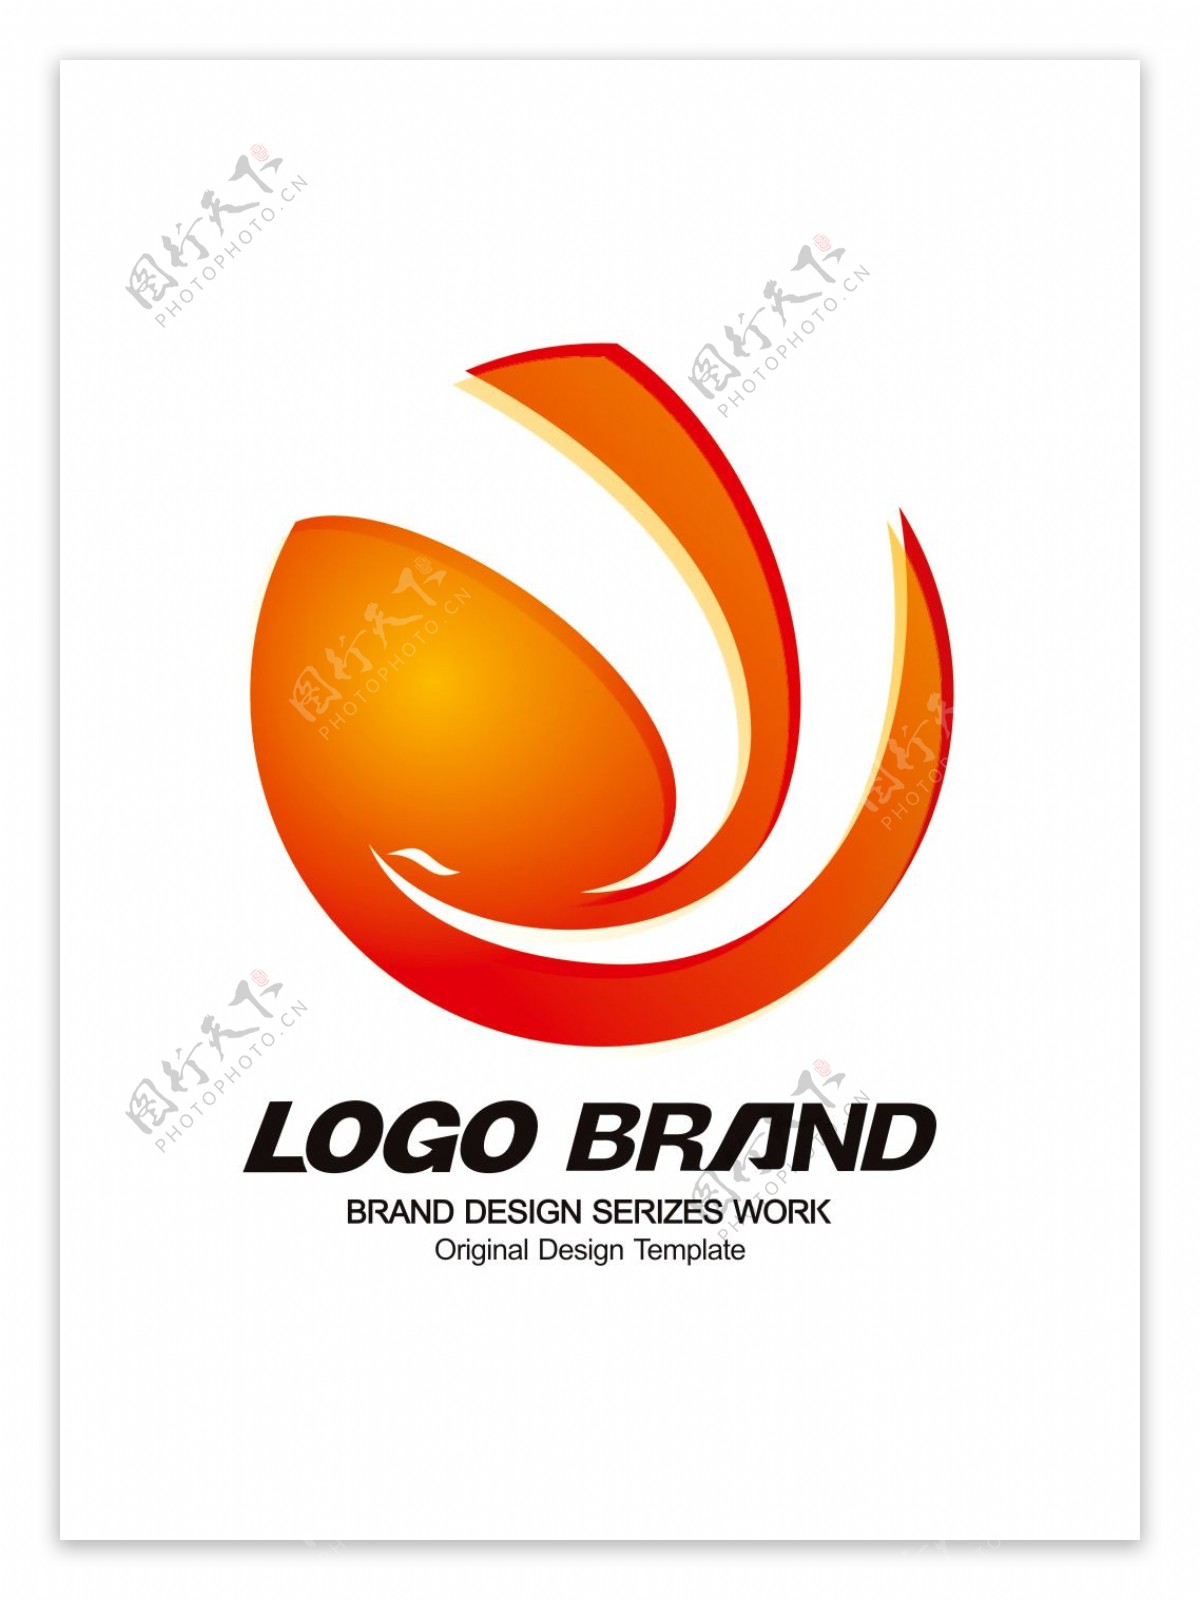 大气红黄凤凰公司标志传媒企业LOGO设计